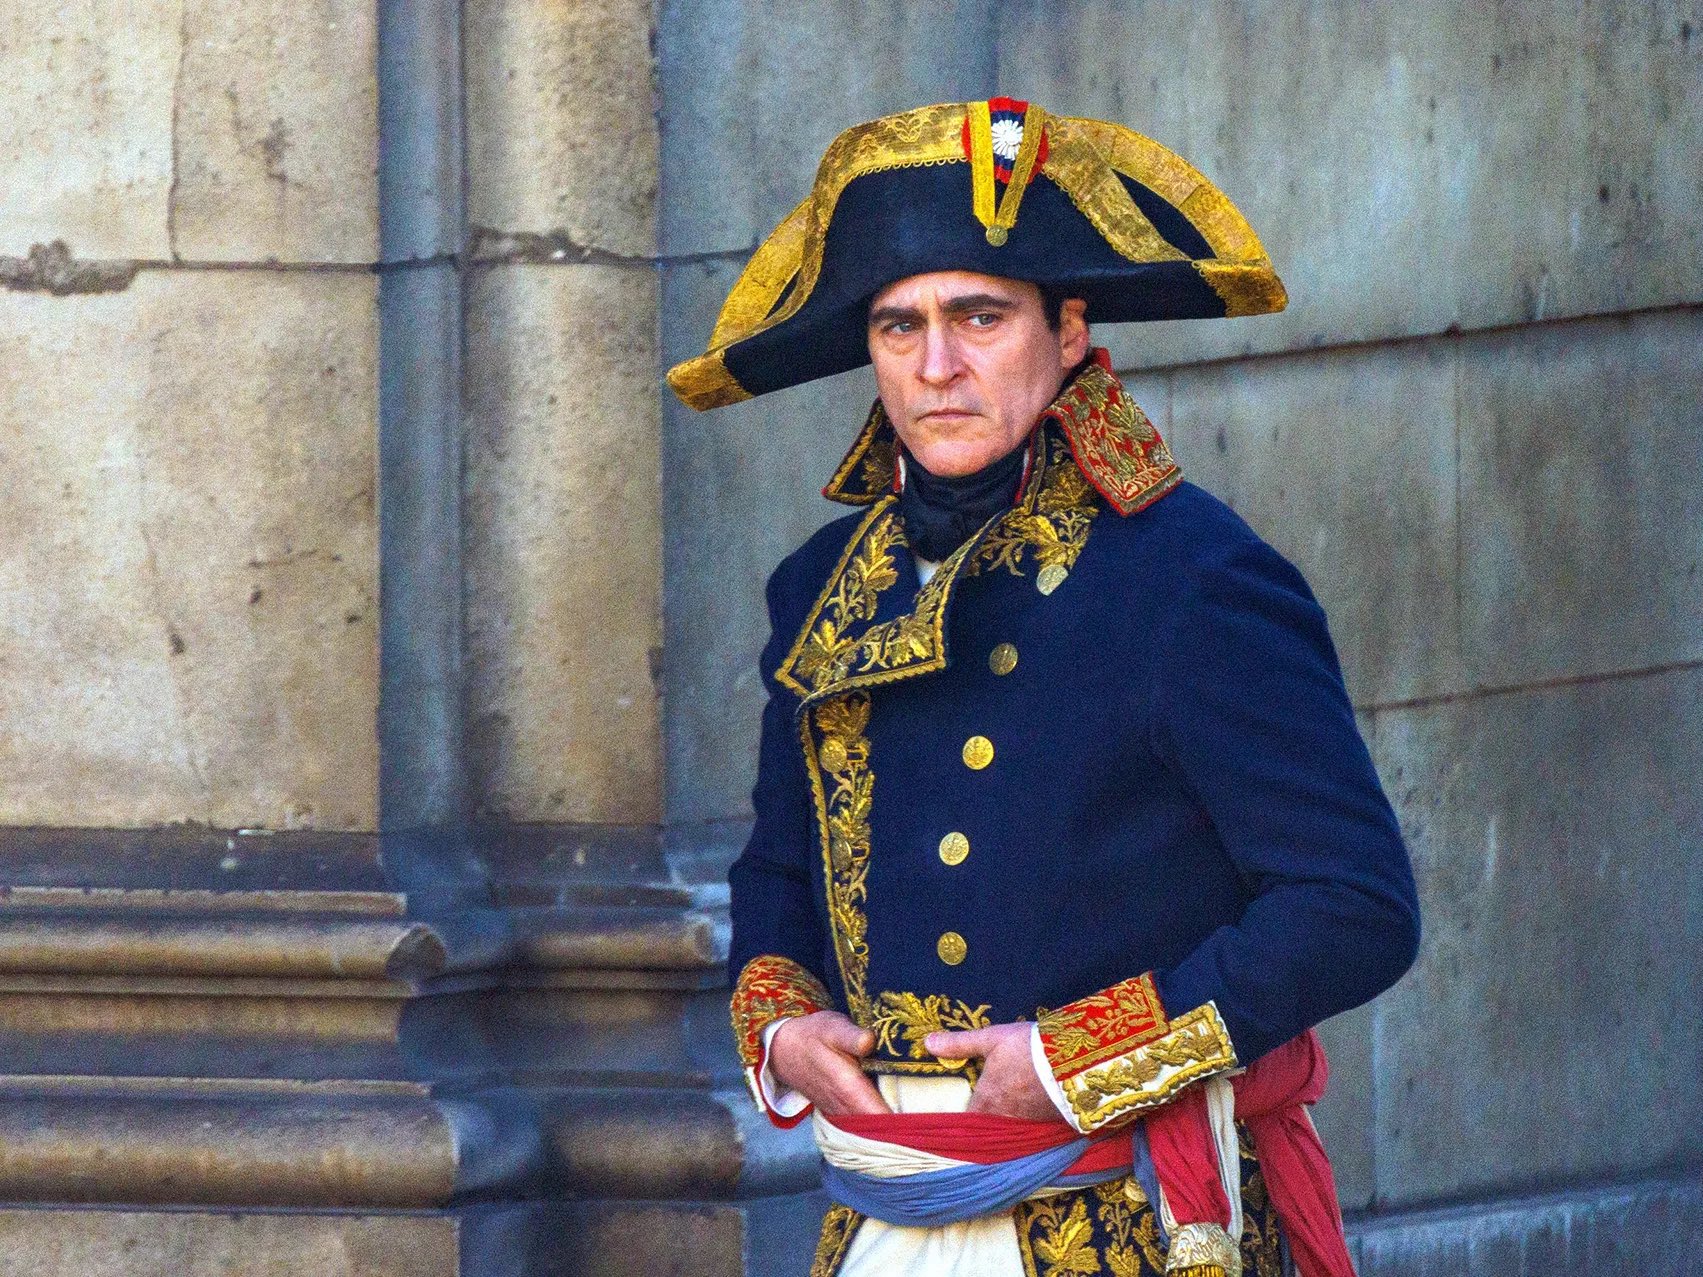 Ridley Scott's Napoleon trailer